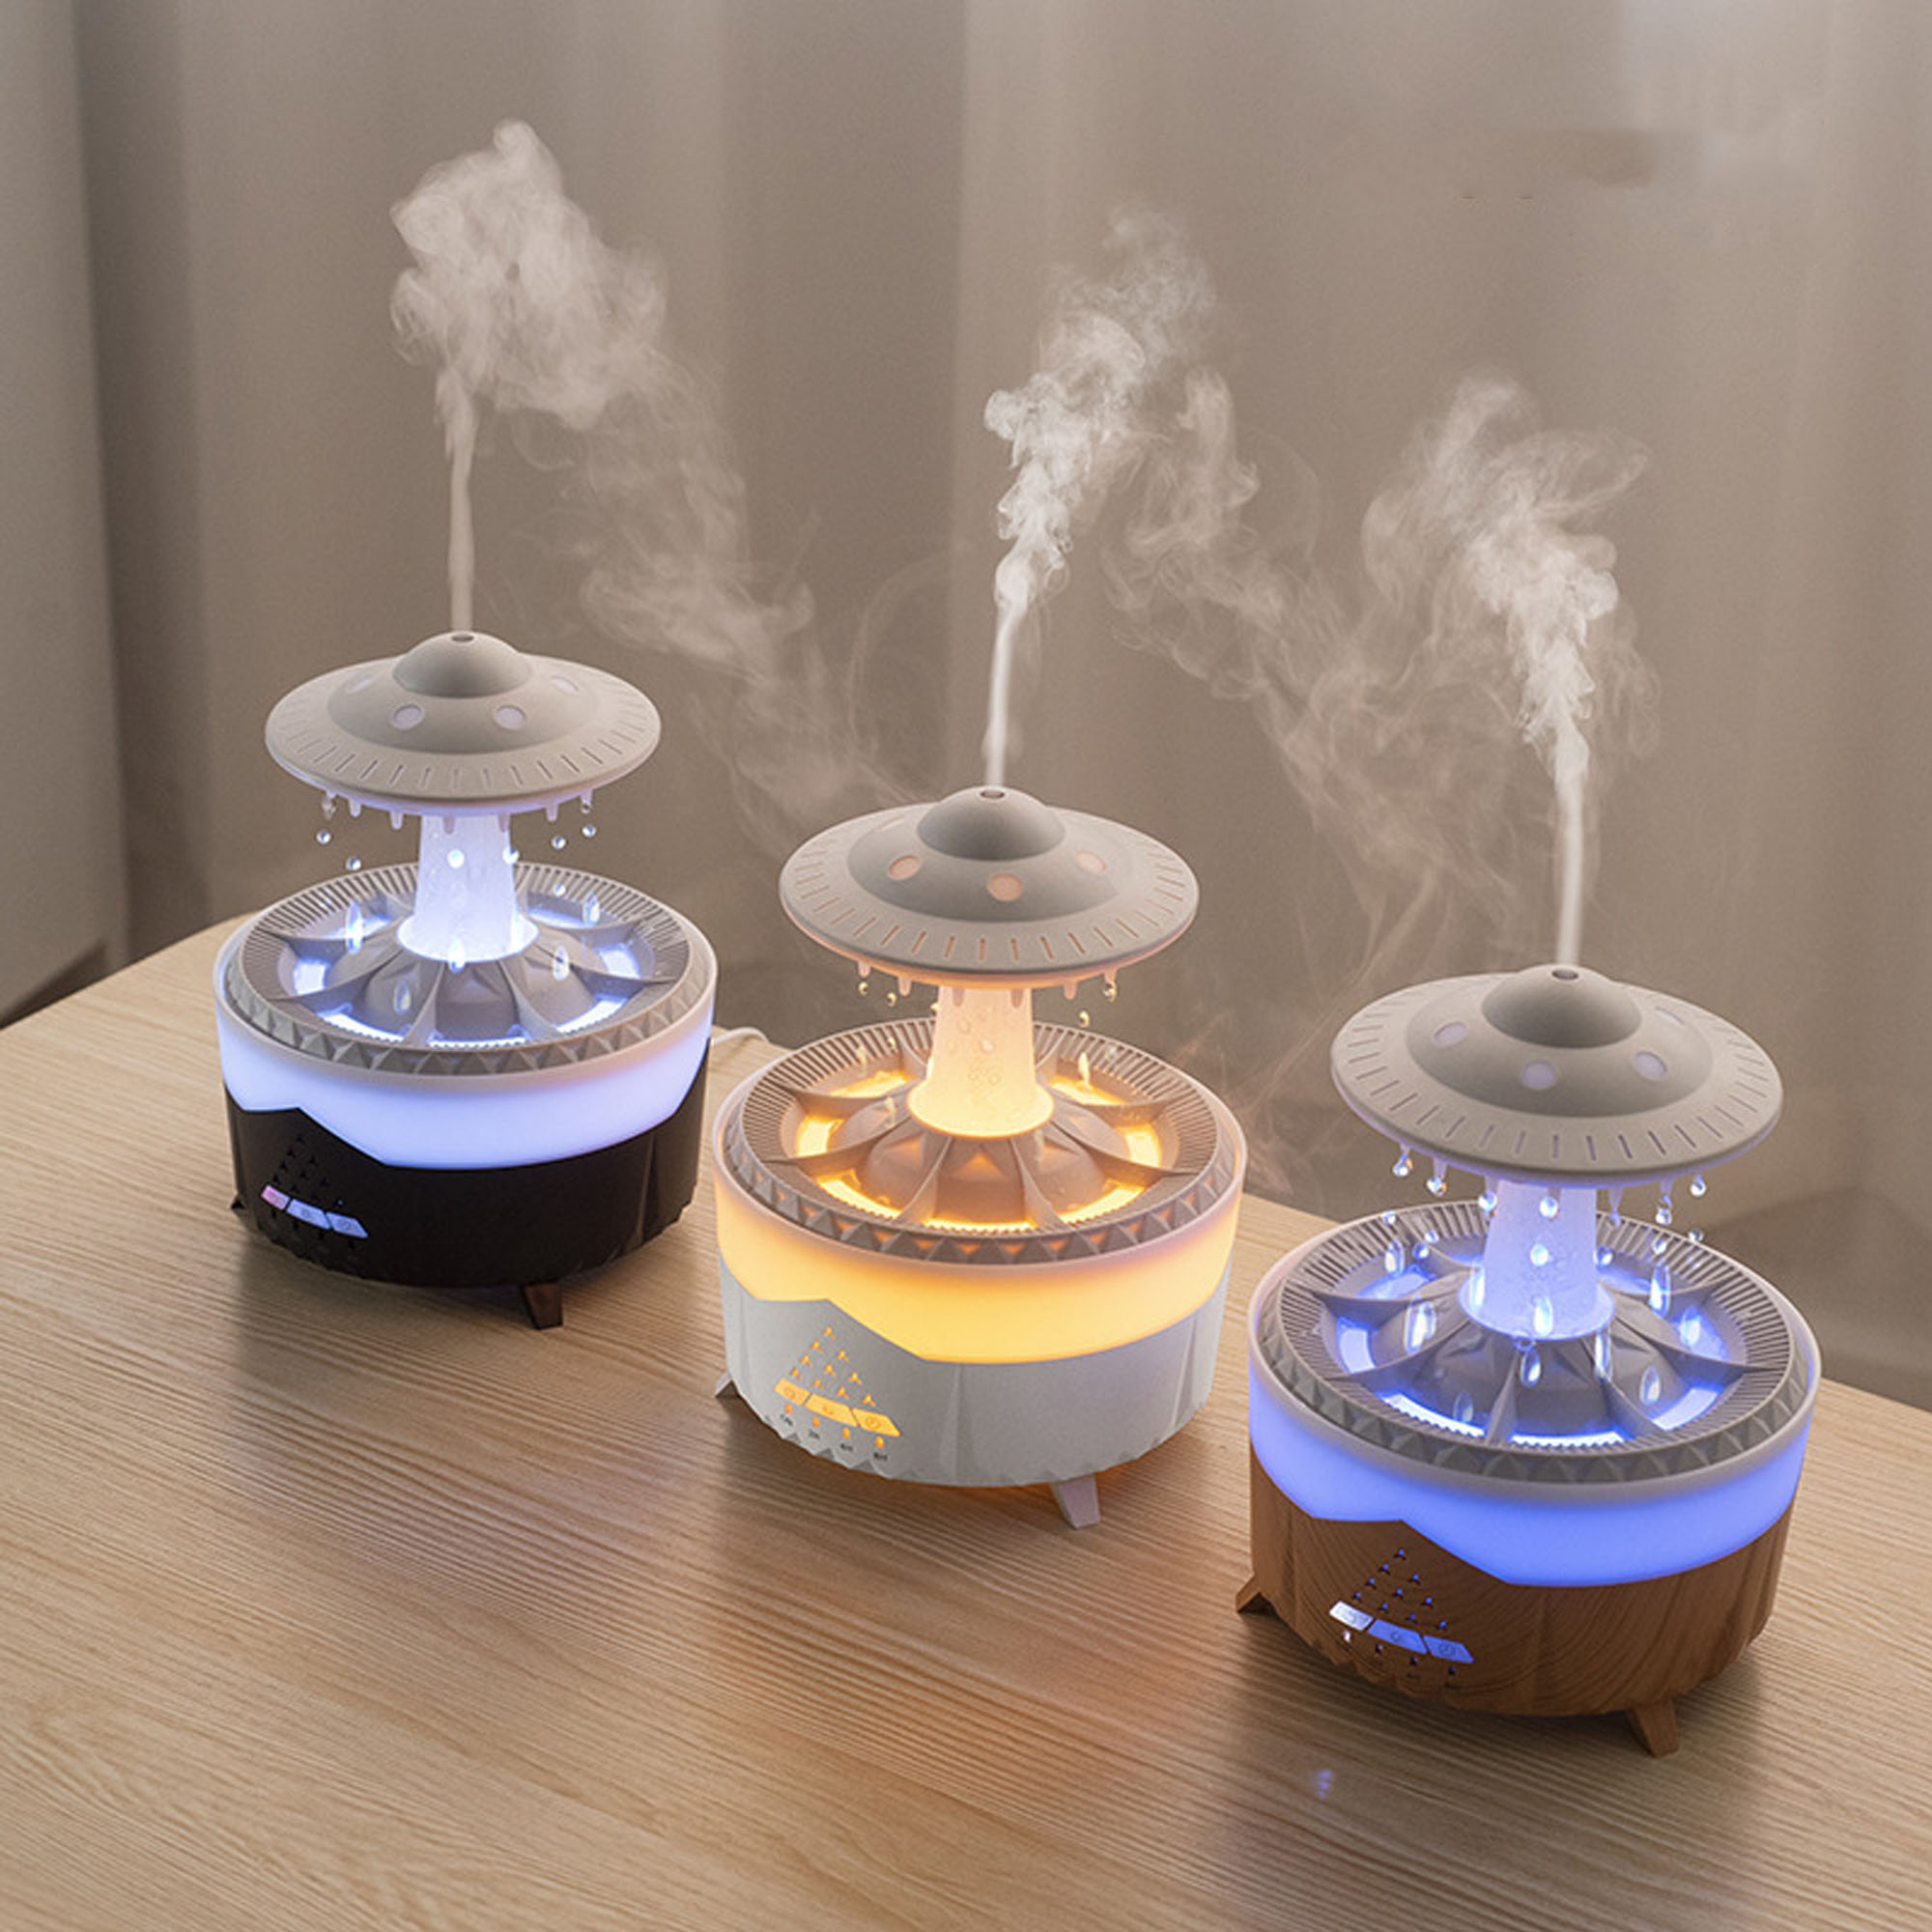 Sprühbefeuchter Aromatherapie Luftbefeuchter Schwarz (Raumgröße: Nebelvolumen, Lichter, UWOT Pilzform: in großes 10 m²) bunte